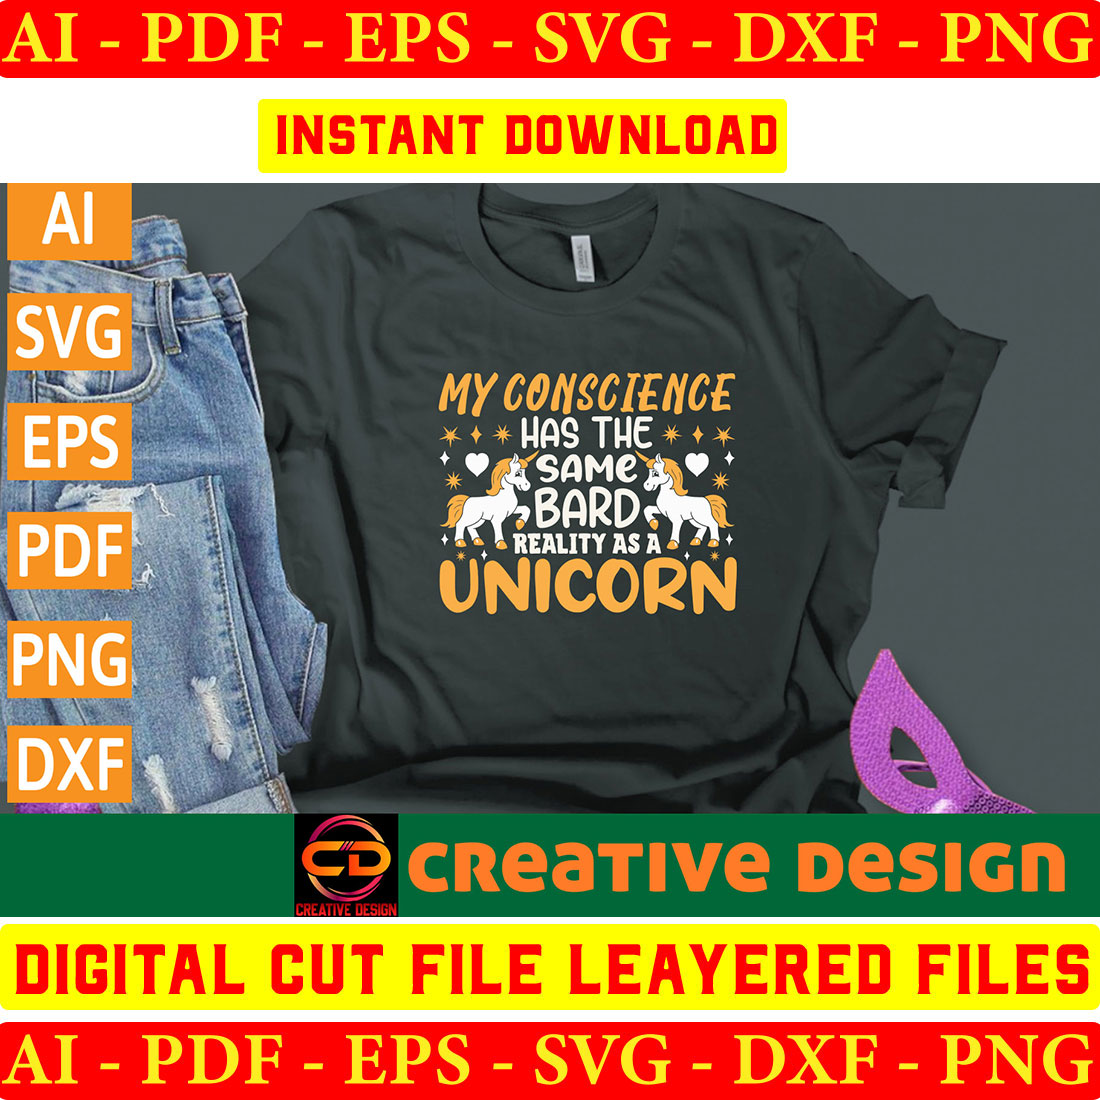 Unicorn T-shirt Design Bundle Vol-3 preview image.